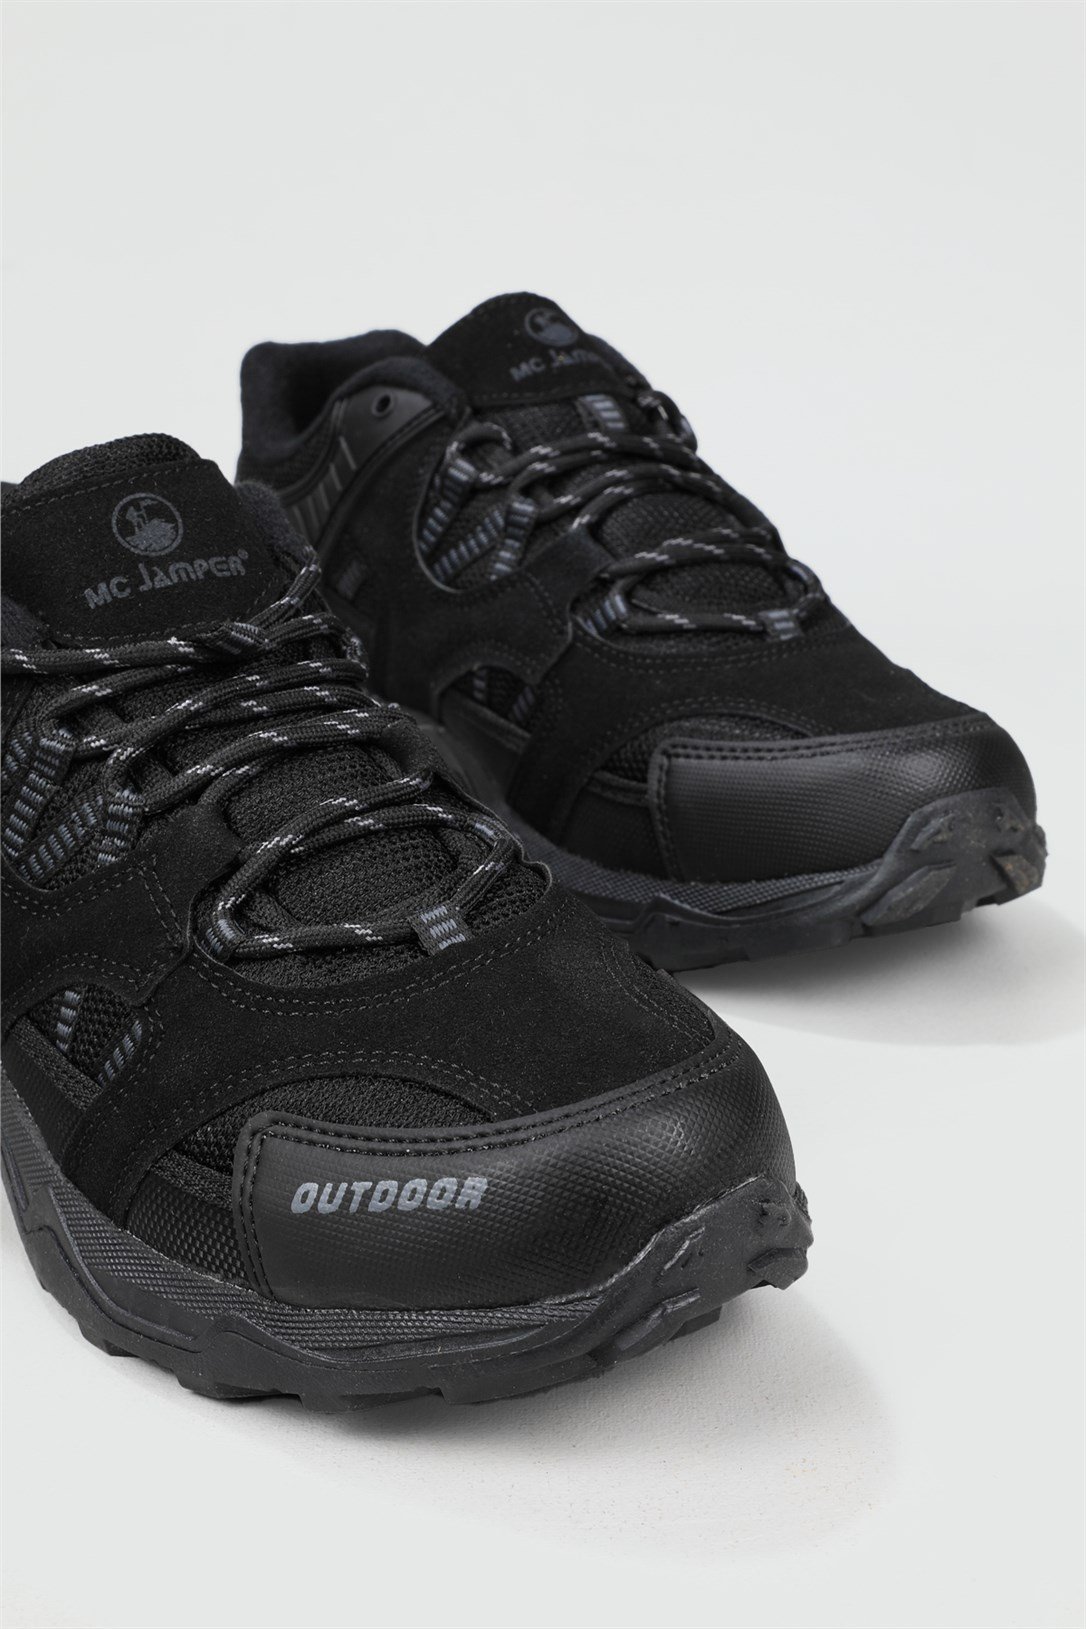 Jamper Trekking Siyah Erkek Spor Ayakkabı 2105 | Ayakkabı City